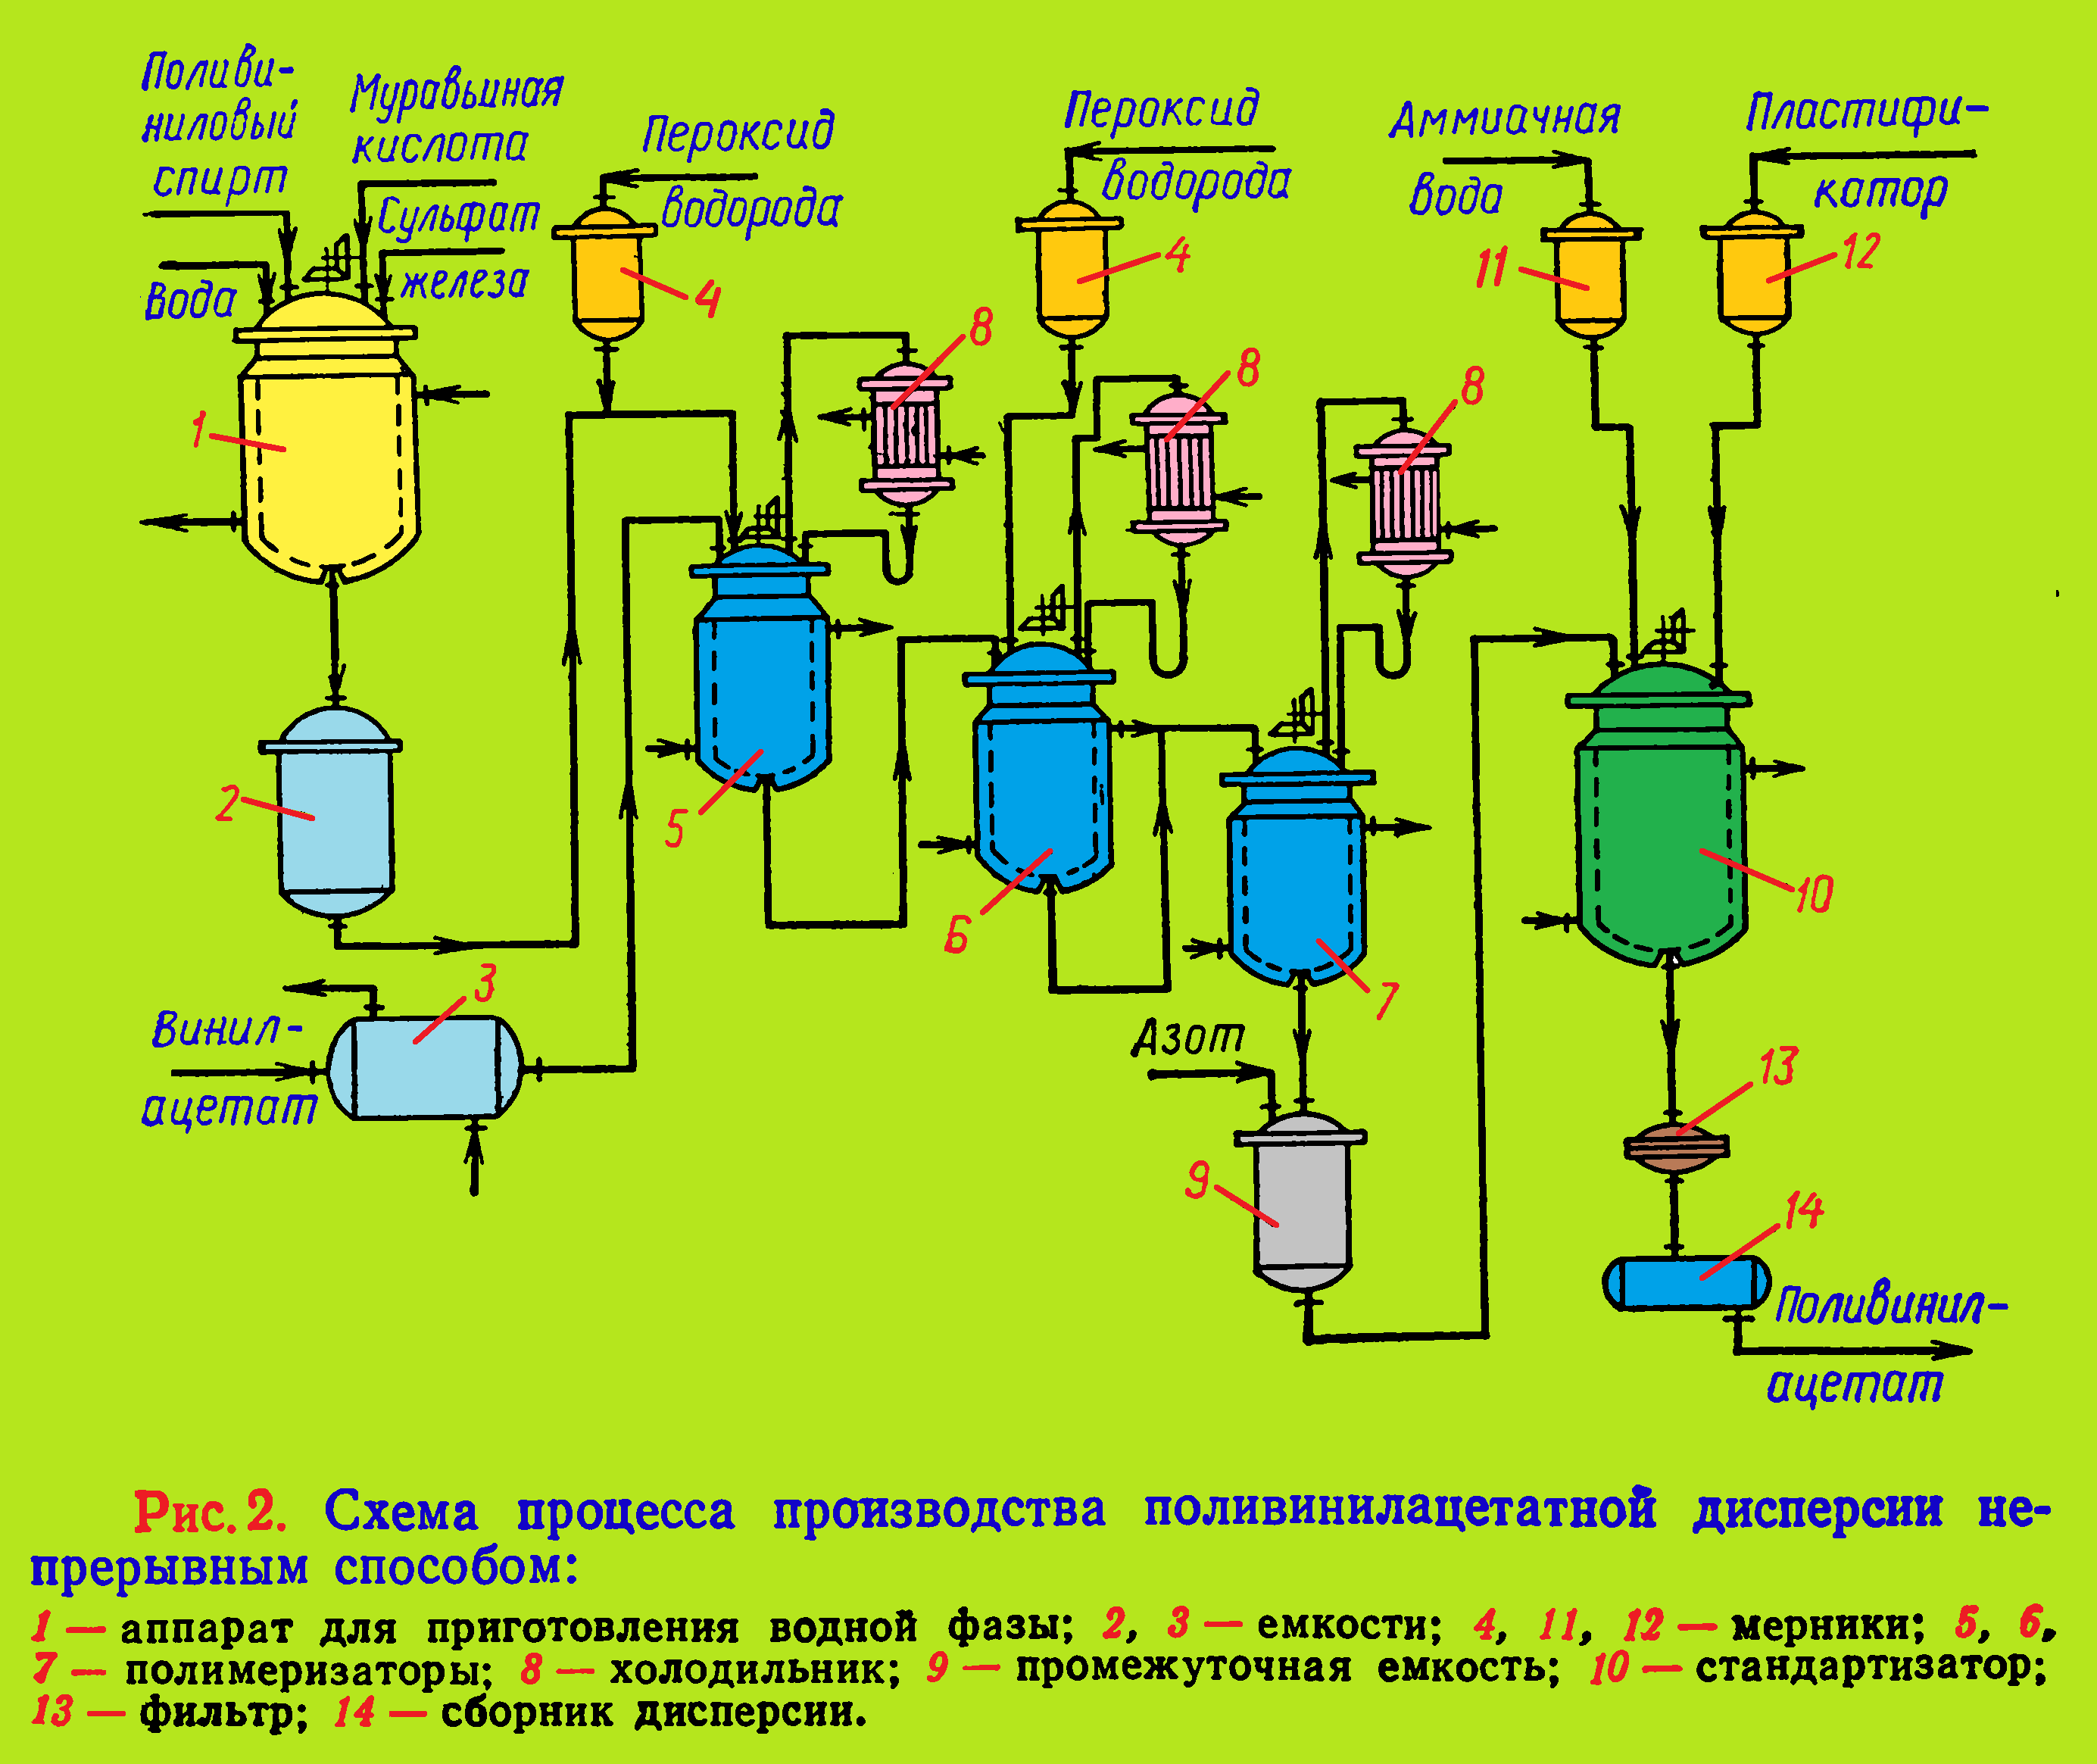 Схема процесса производства поливинилацетатной дисперсии непрерывным способом